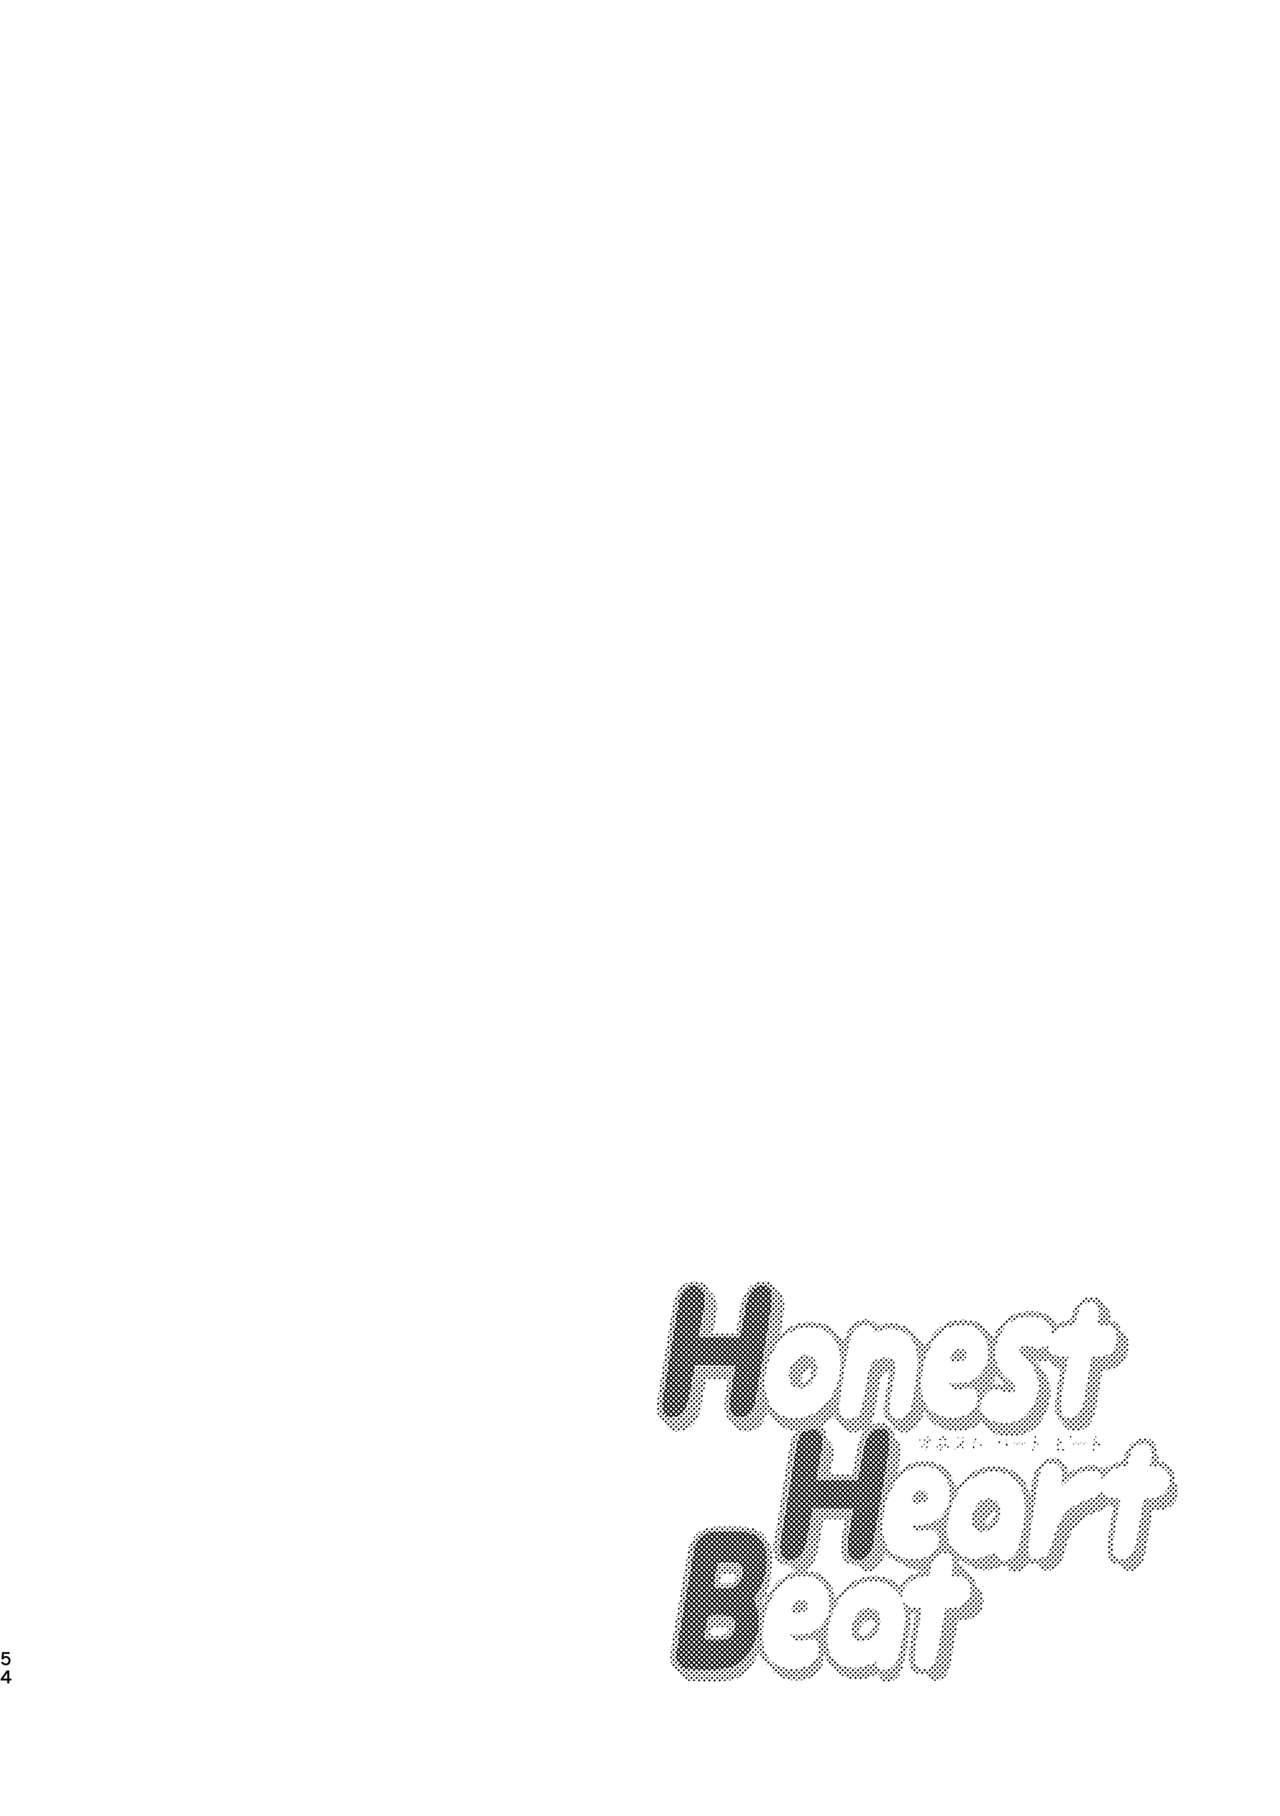 Honest Heart Beat 51